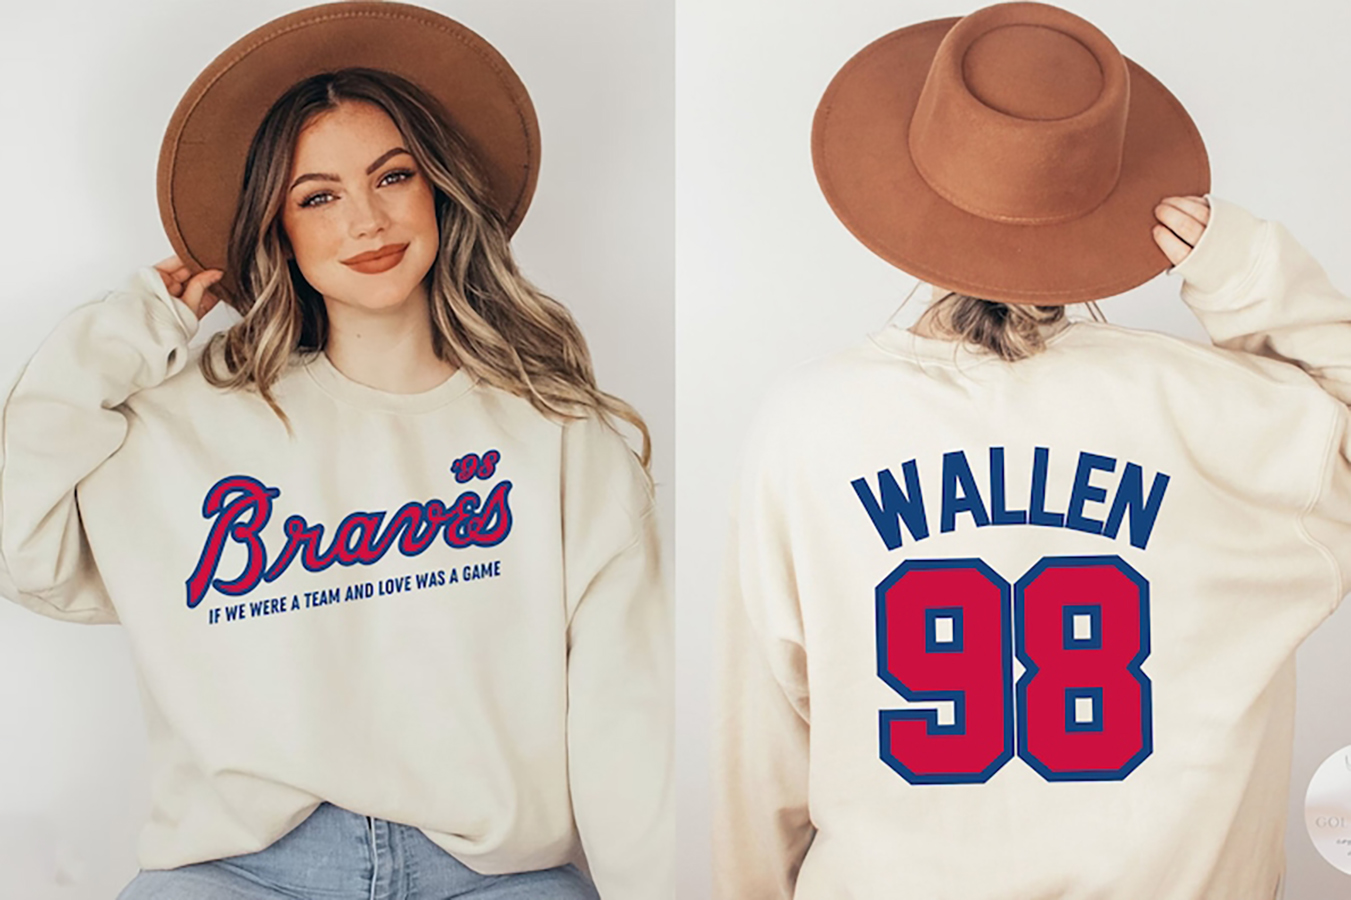 98 Braves Morgan Wallen Shirt, hoodie, longsleeve, sweater